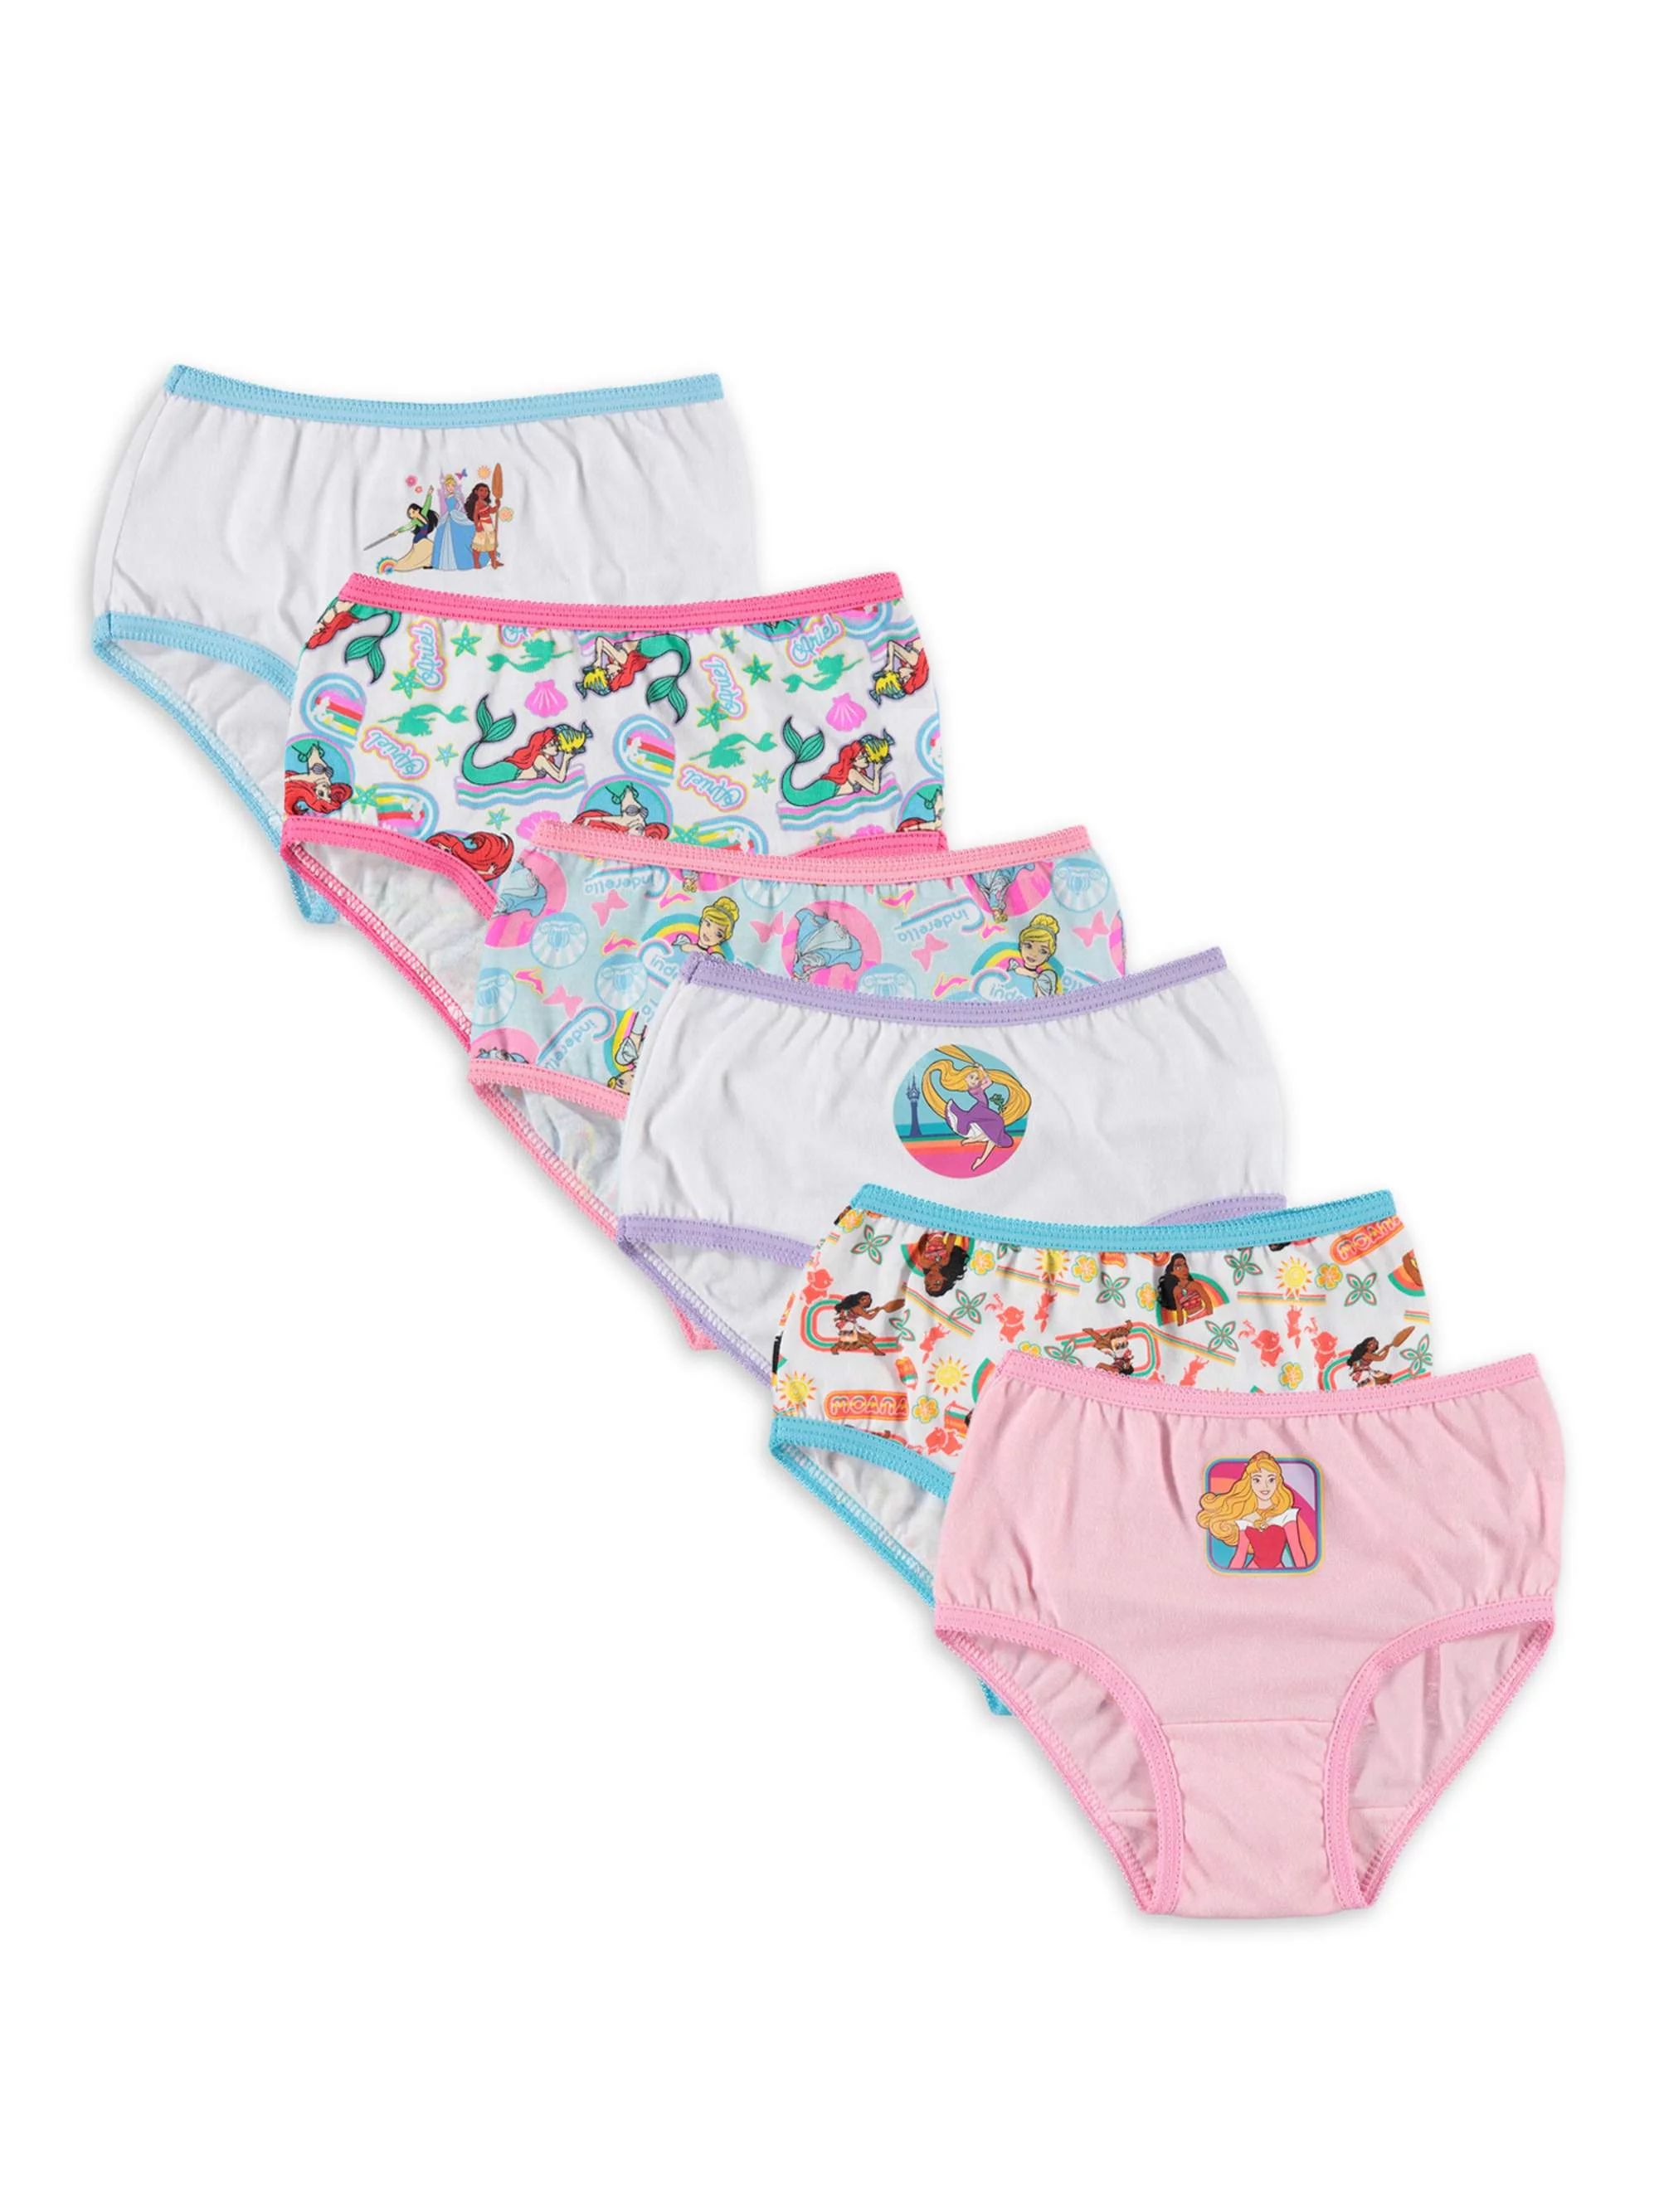 Disney Princess Toddler Girls' Panties, 6 Pack Sizes 2T-4T - Walmart.com | Walmart (US)